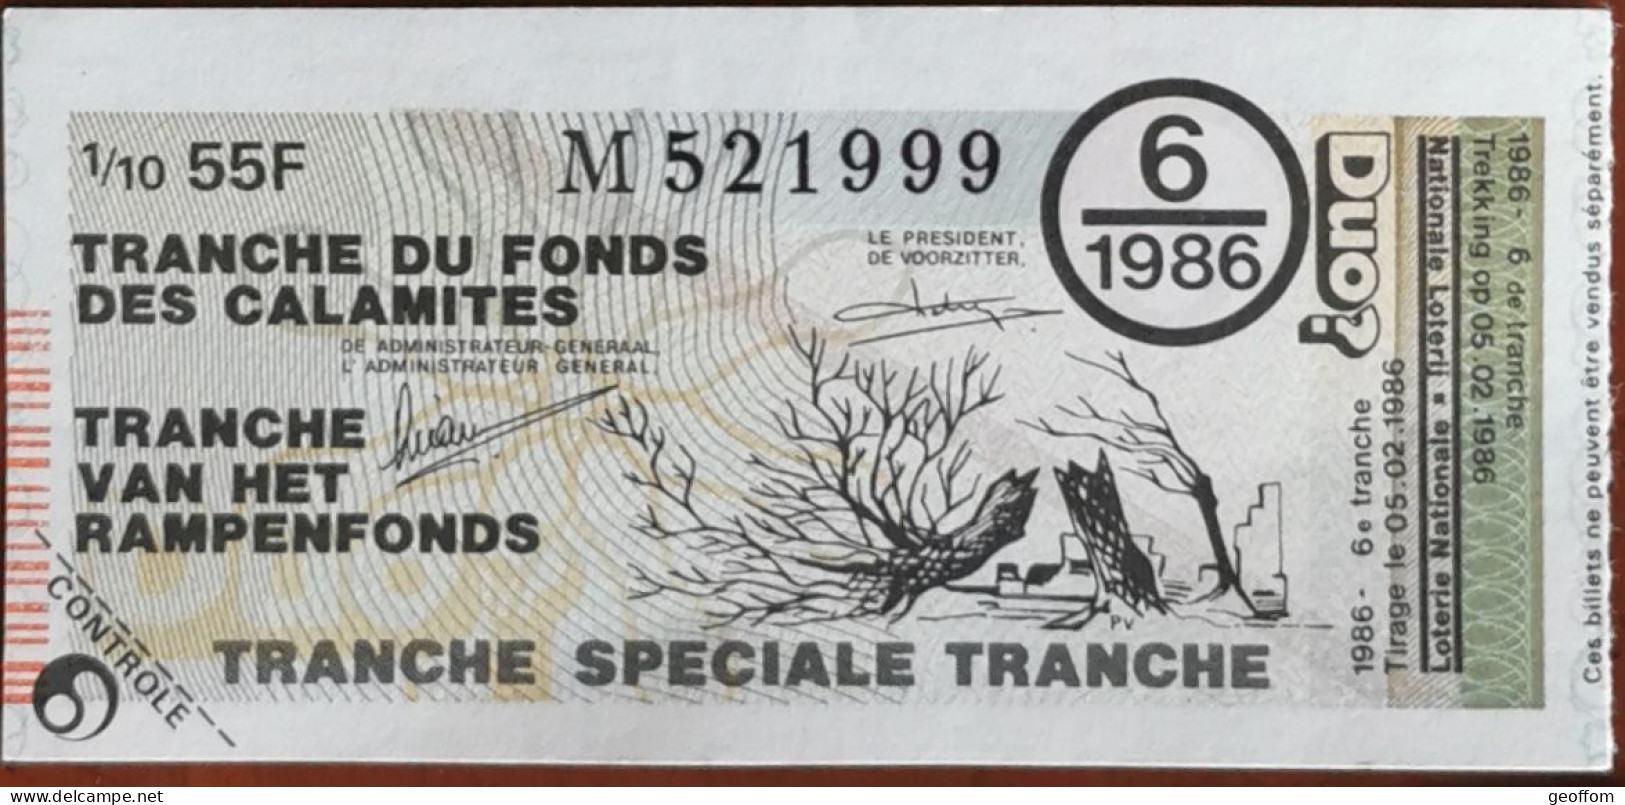 Billet De Loterie Nationale Belgique 1986 6e Tranche Du Fond Des Calamites - 5-2-1986 - Biglietti Della Lotteria